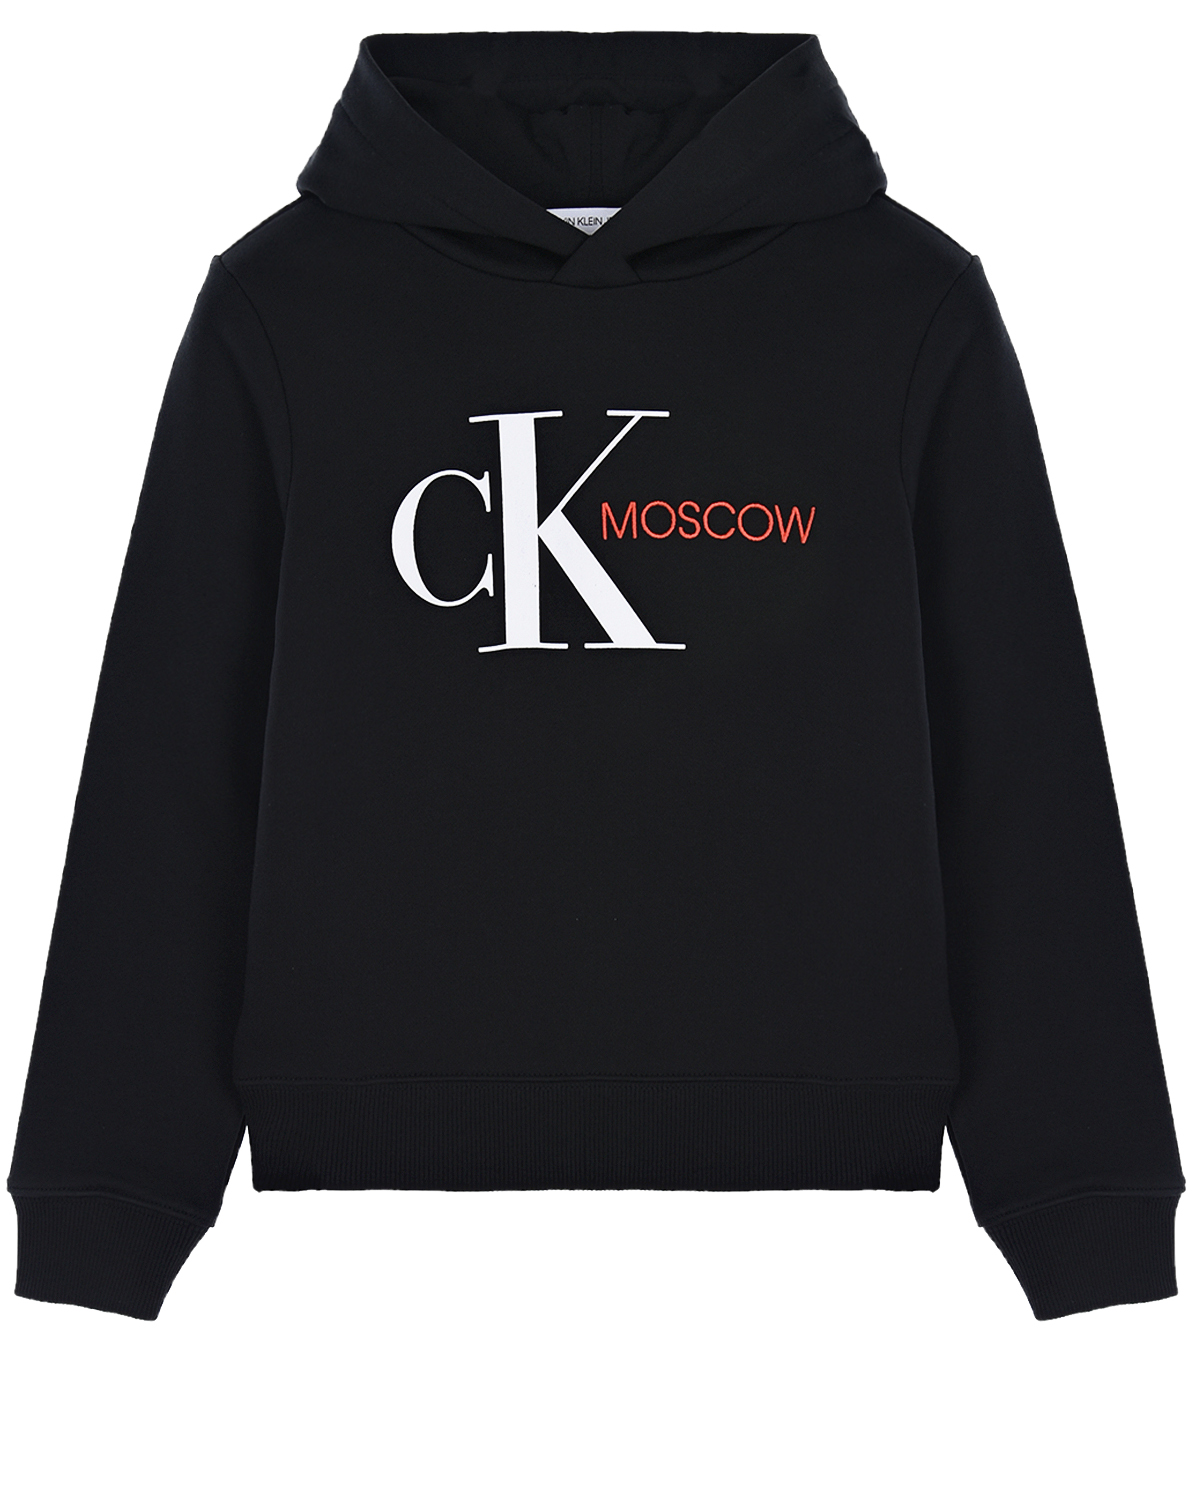 Черная толстовка-худи с надписью "Moscow" Calvin Klein детская, размер 128, цвет черный - фото 1